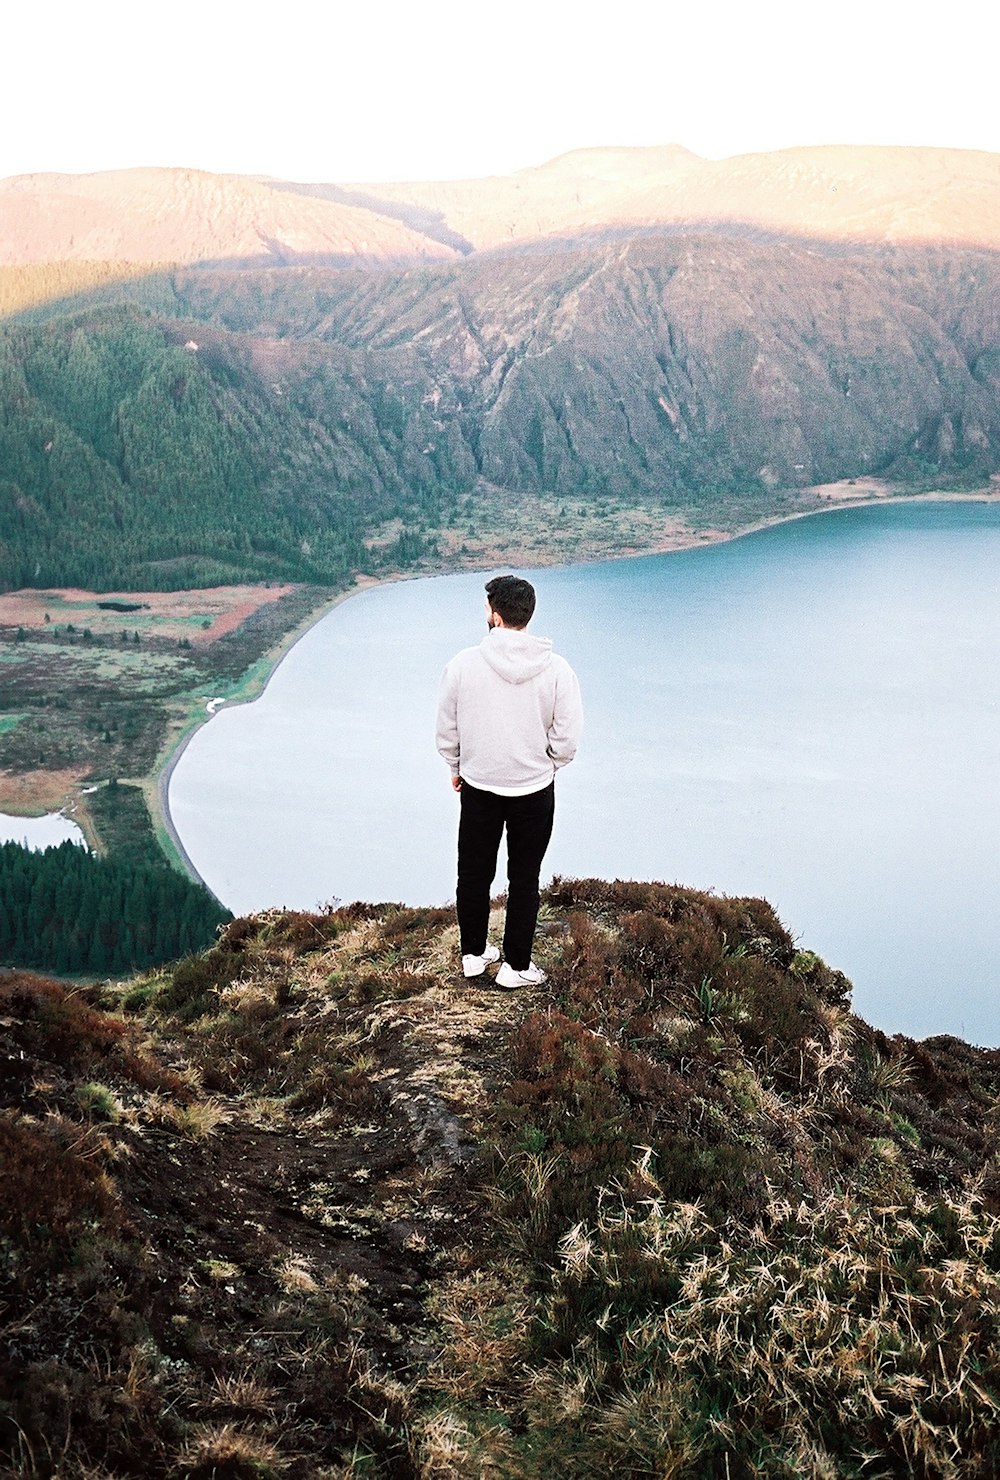 호수가 내려다보이는 언덕 꼭대기에 서 있는 남자